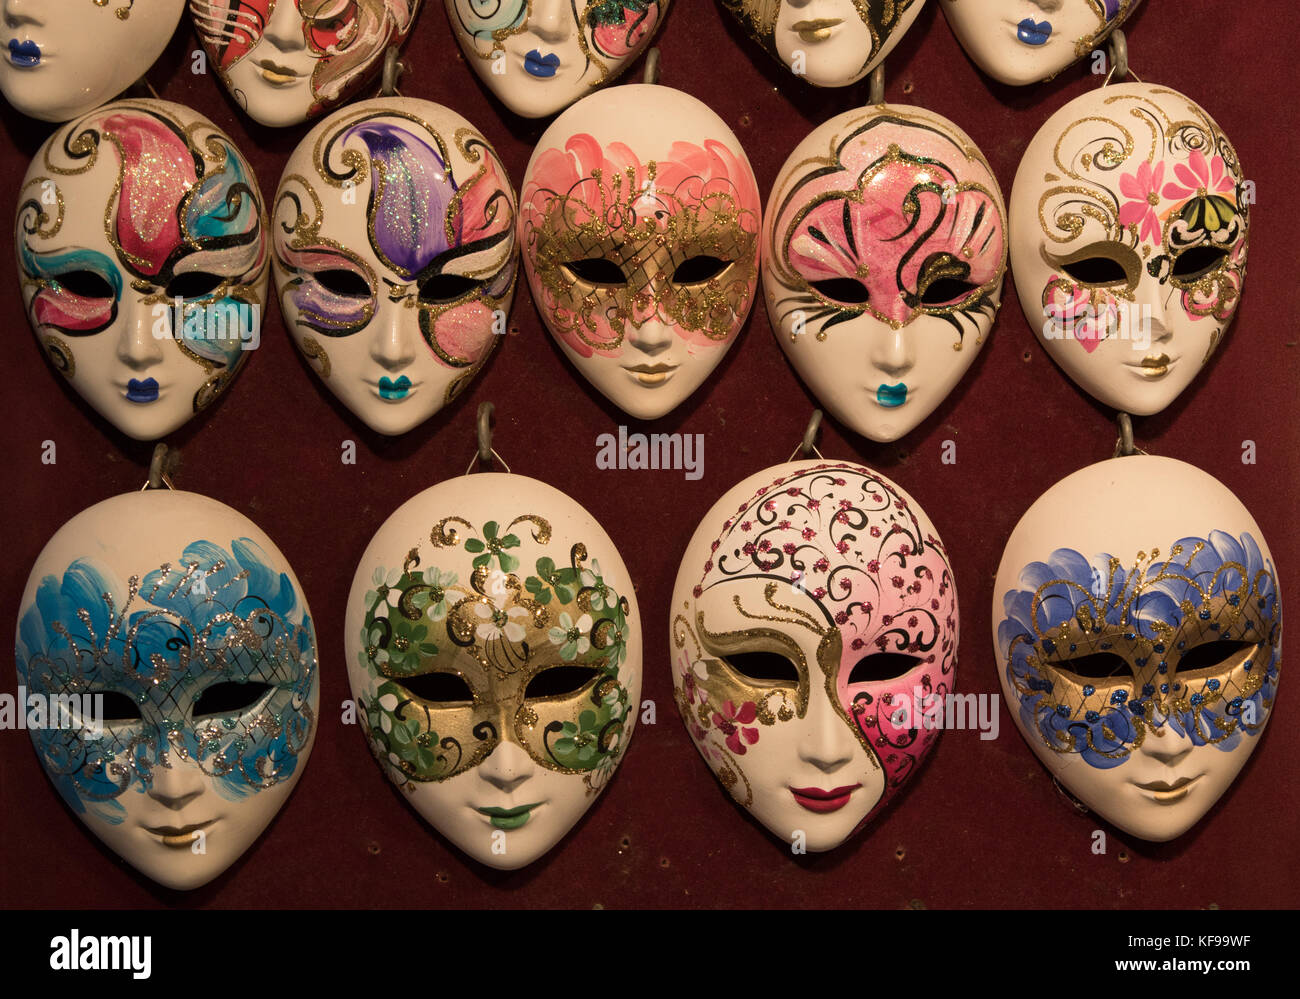 Maschere di ceramica immagini e fotografie stock ad alta risoluzione - Alamy